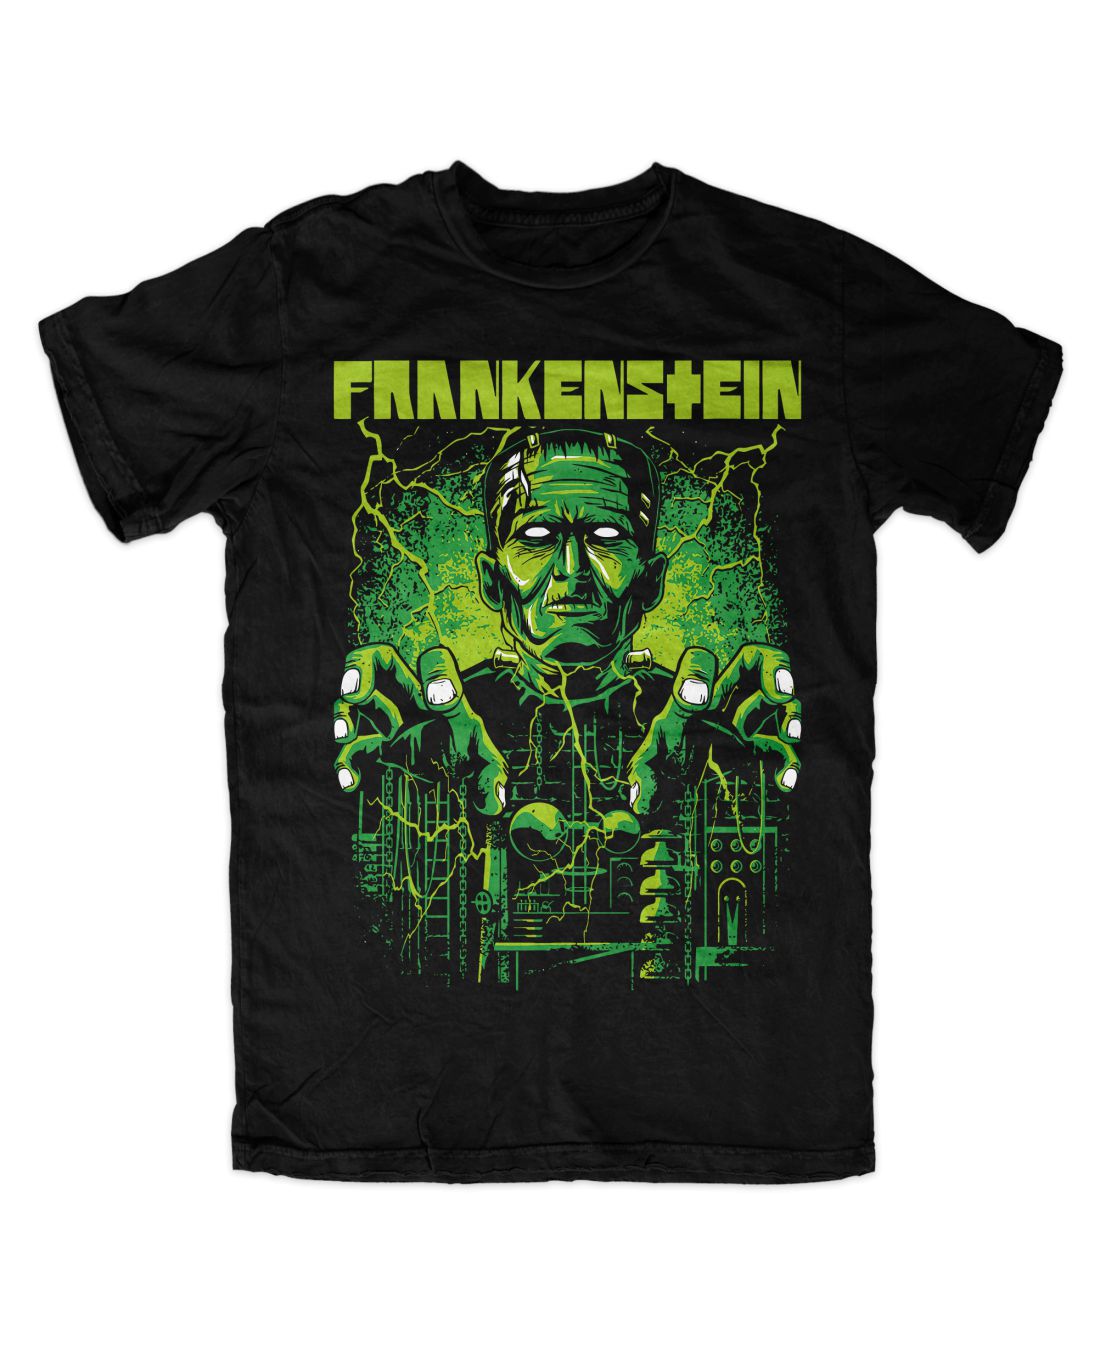 Frankenstein 001 metal series